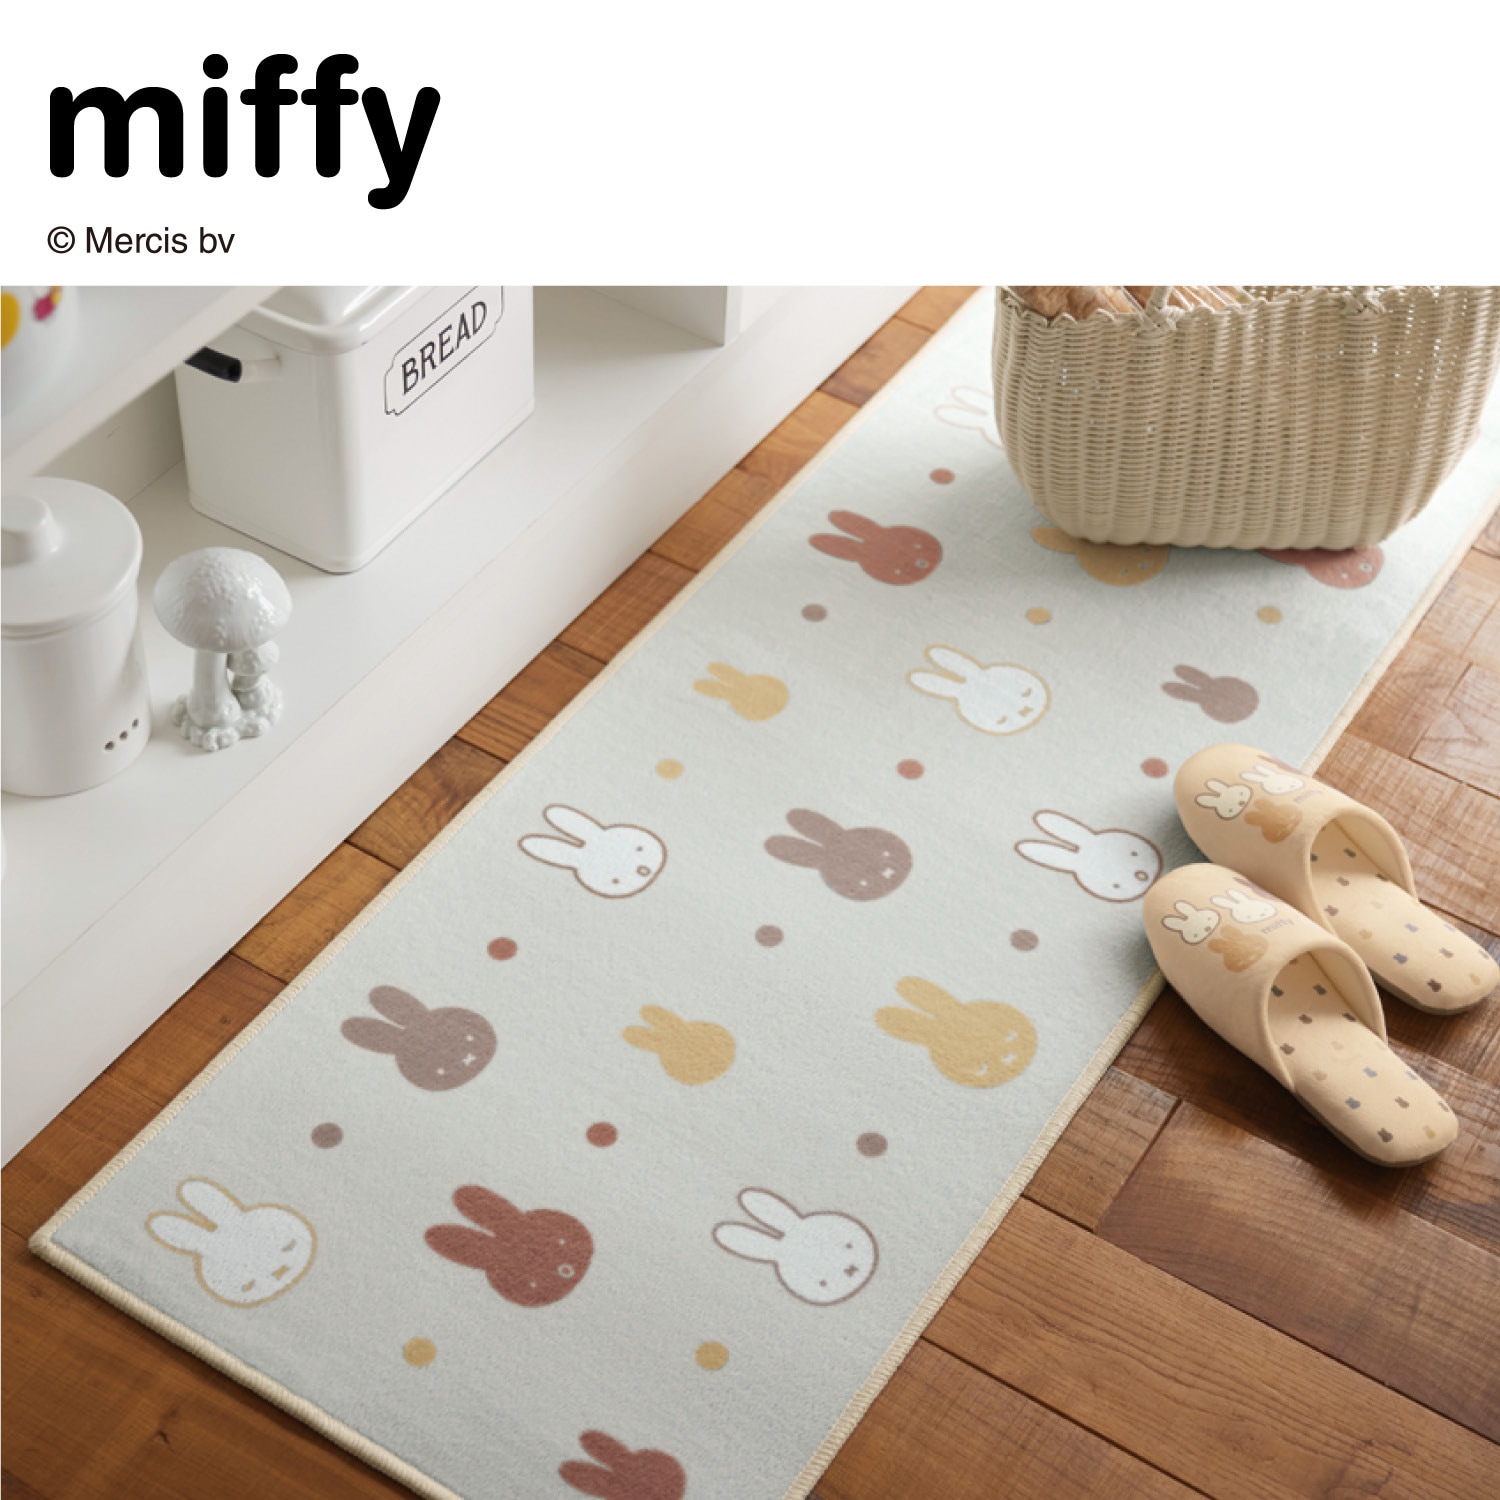 ふんわり柔らかなキッチンマット「ミッフィー」(ミッフィー/miffy